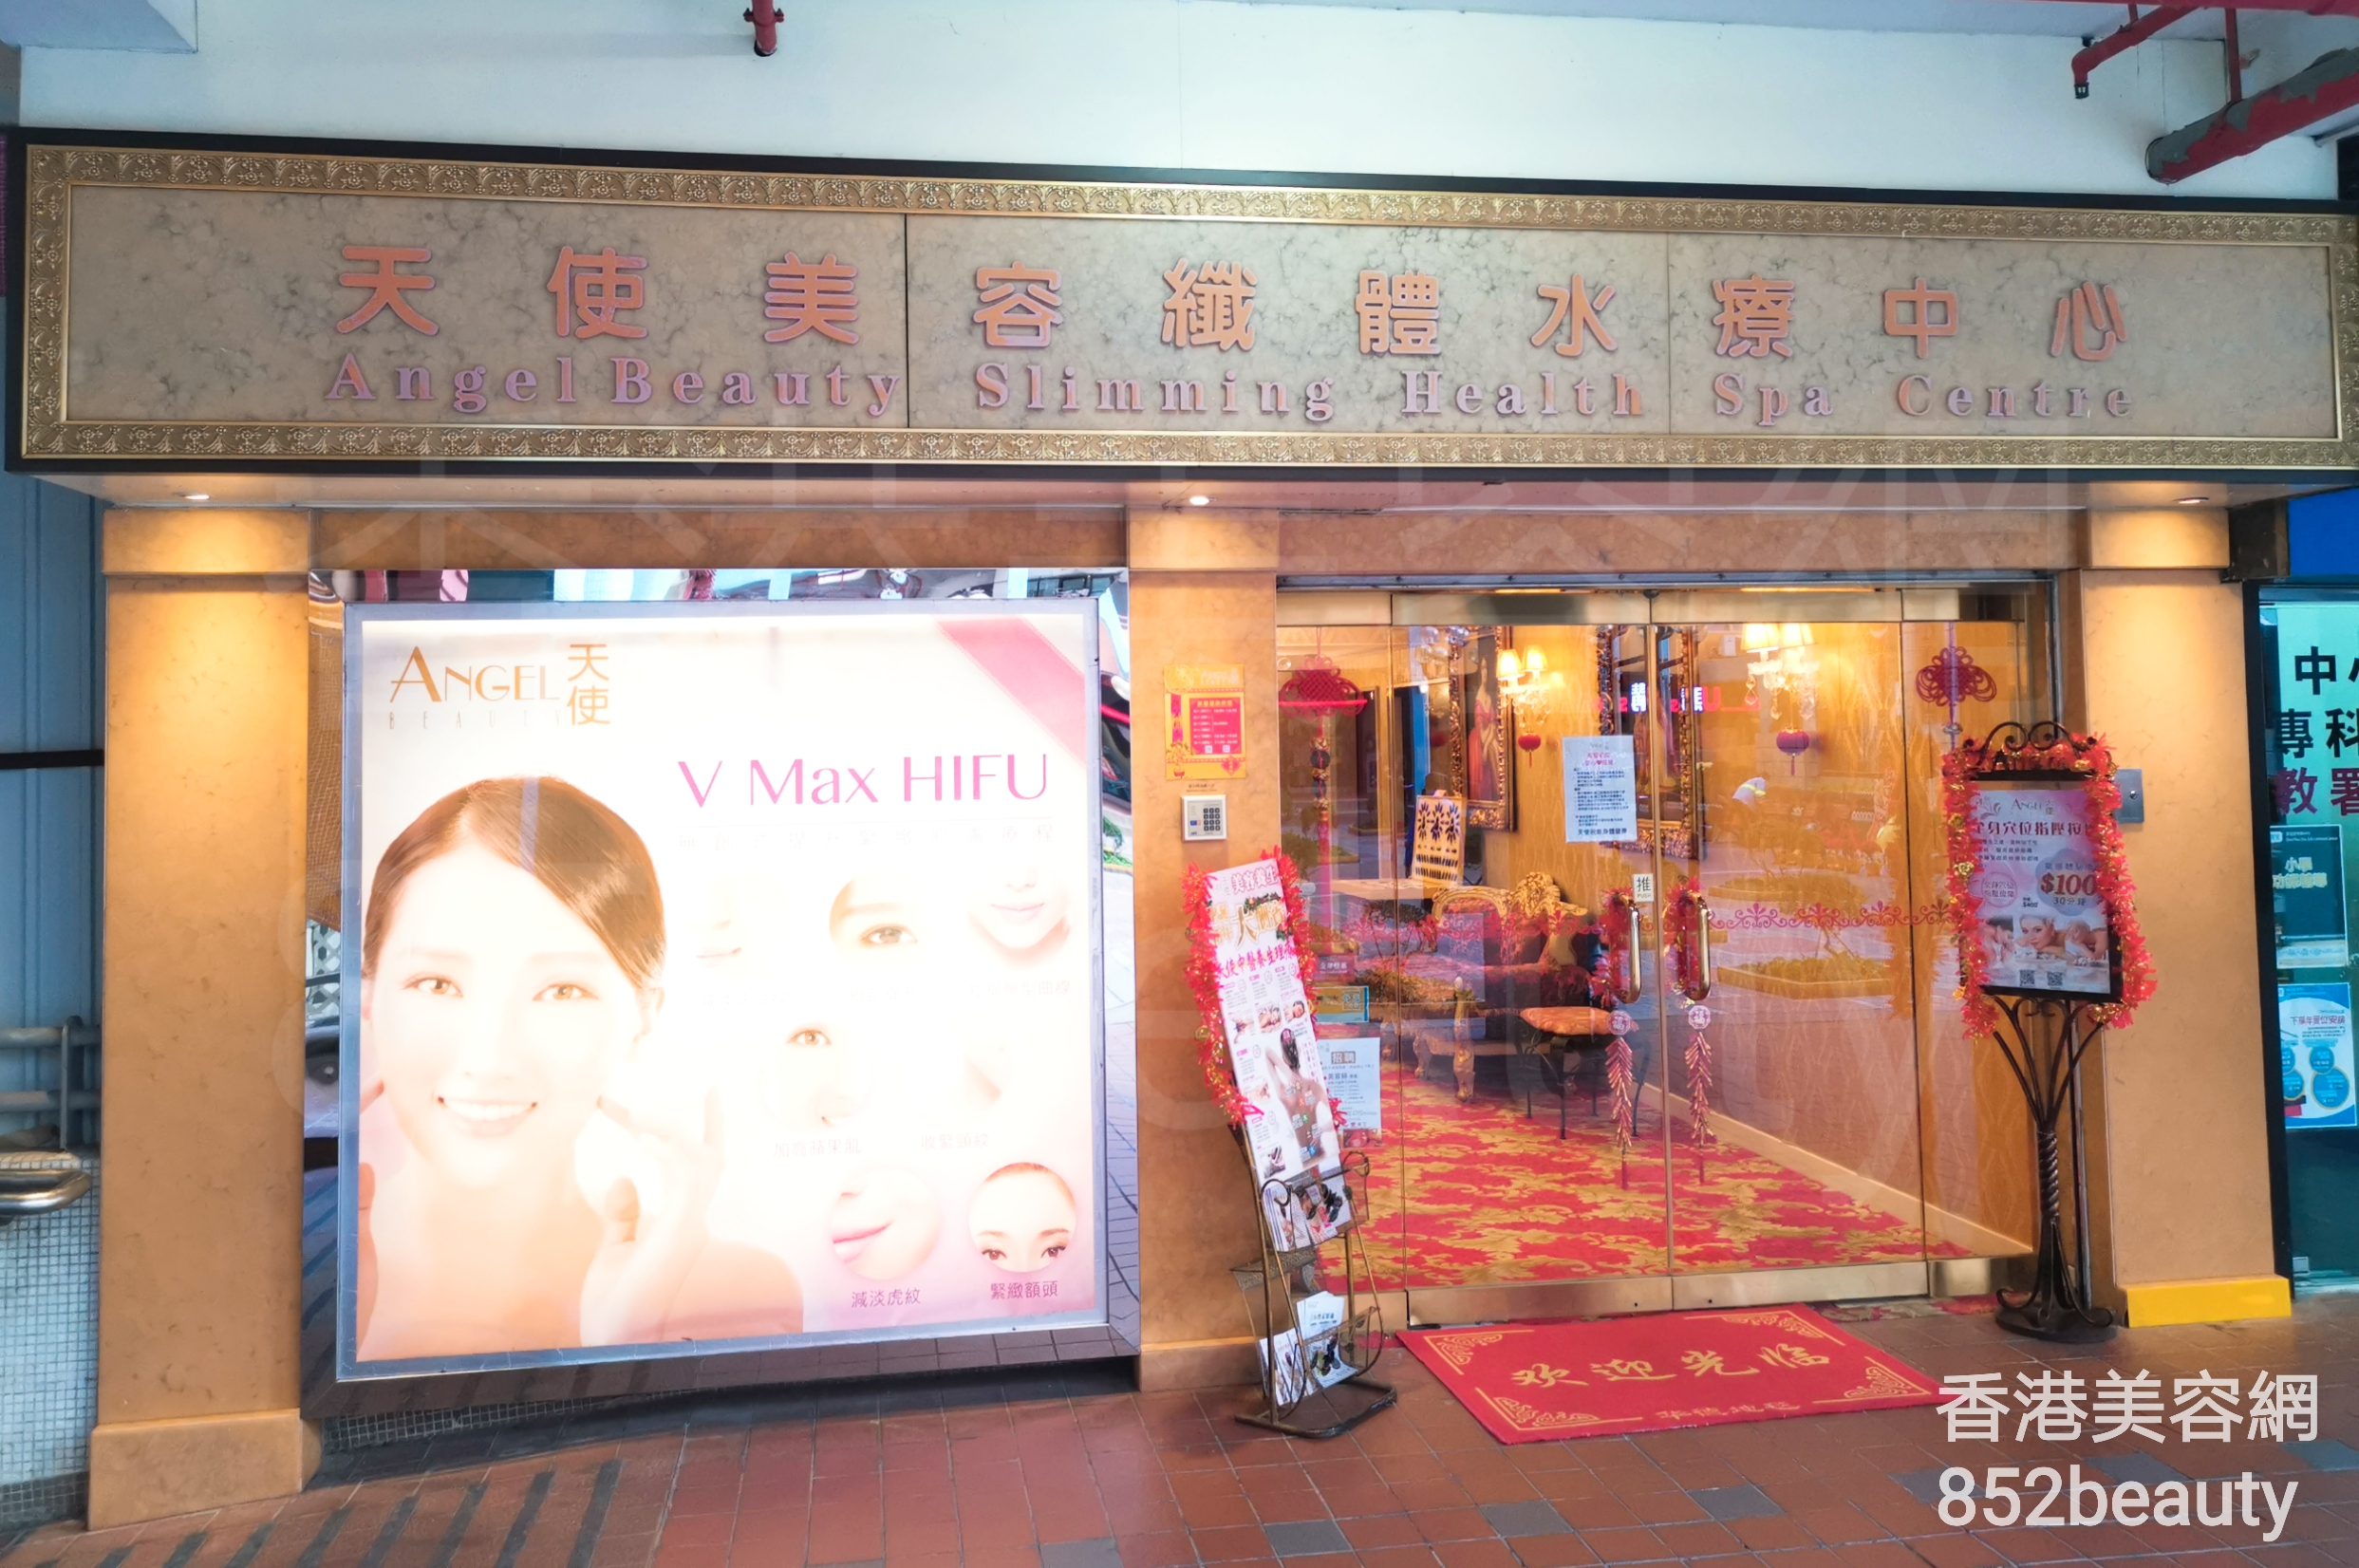 香港美容網 Hong Kong Beauty Salon 美容院 / 美容師: Angel Beauty Slimming 天使美容纖體水療中心 (牛頭角)